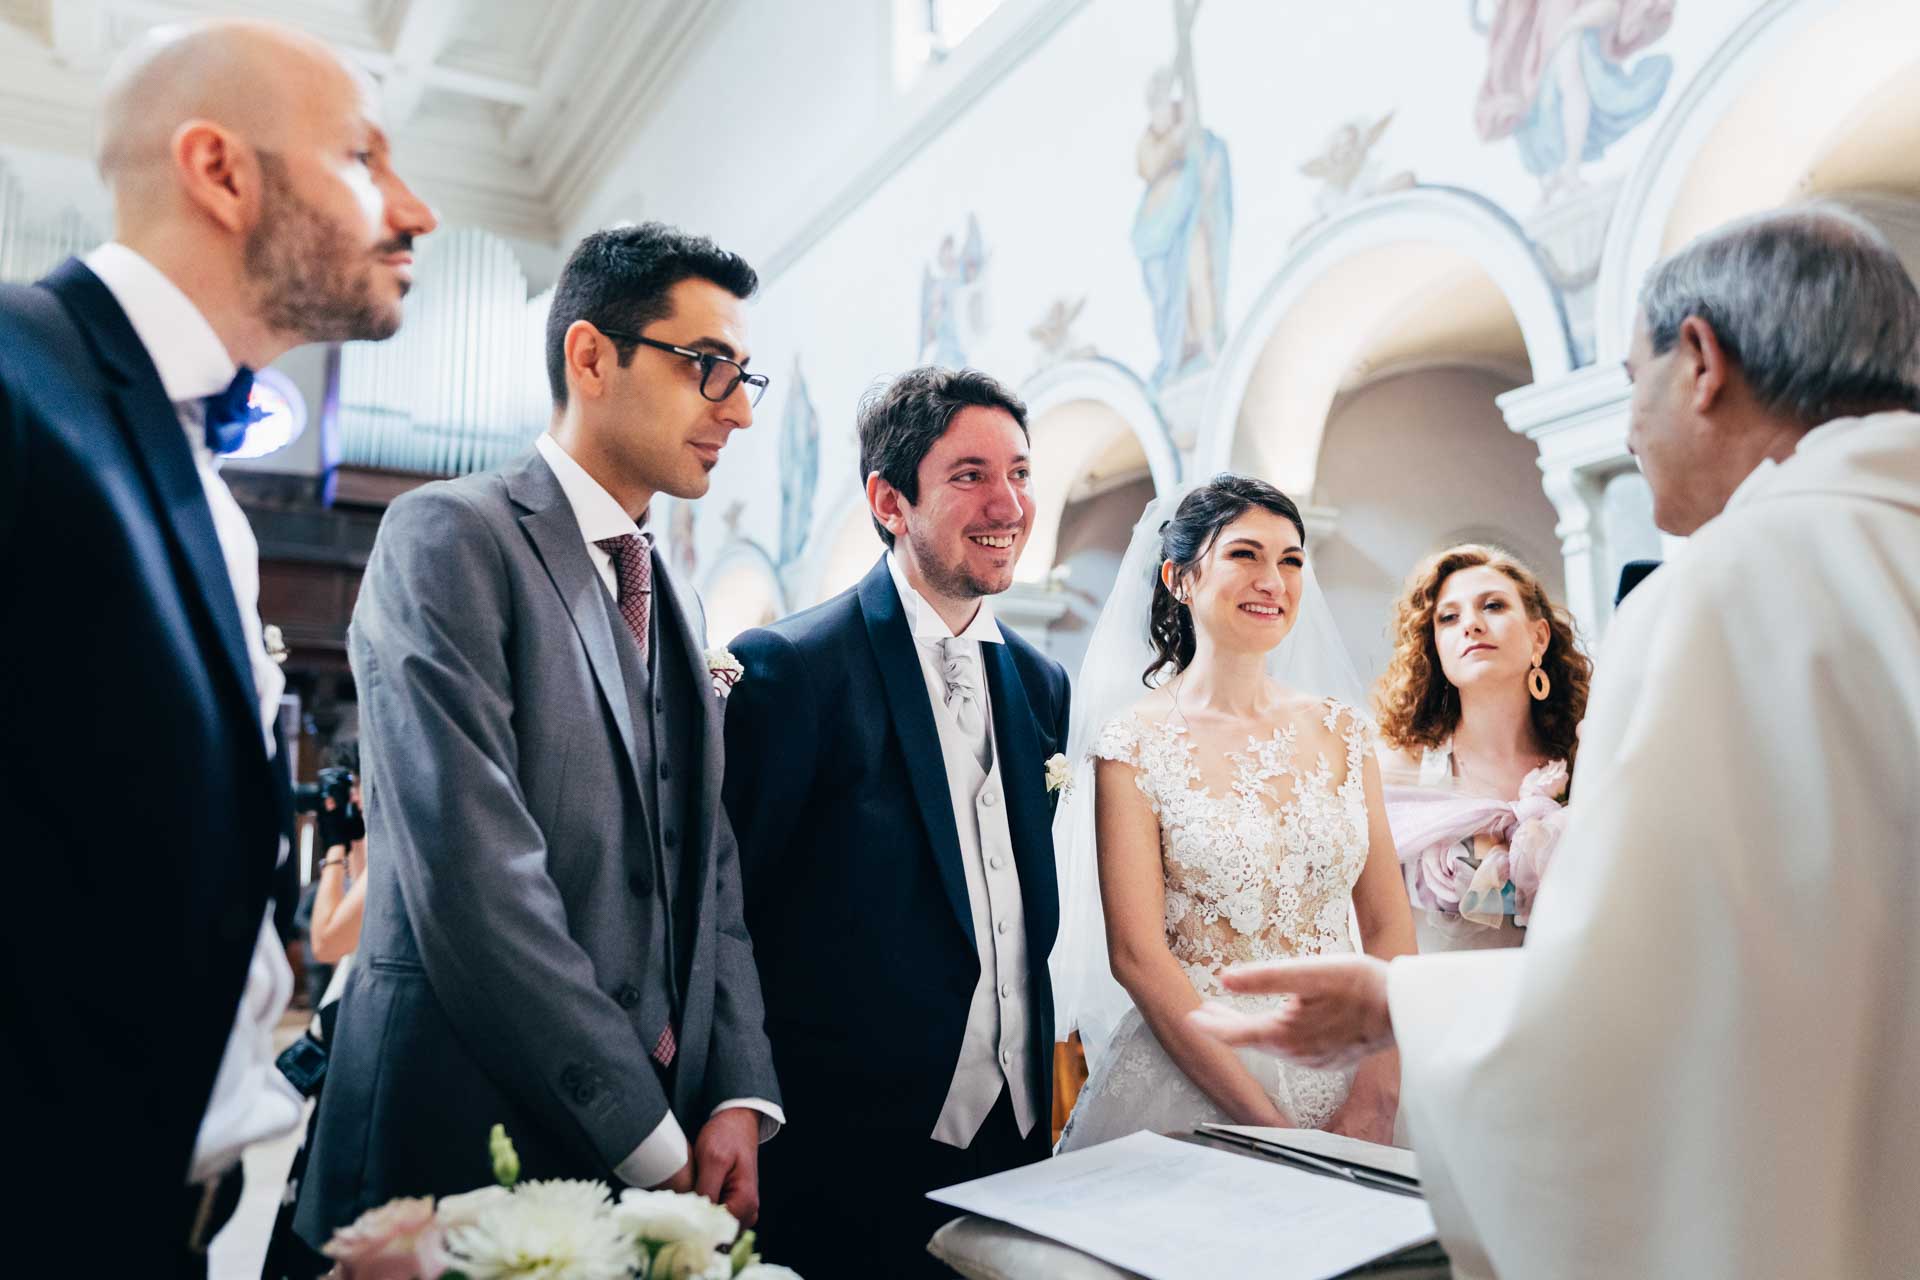 Gli sposi insieme ai testimoni alla fine del matrimonio nella chiesa di Santa Prisca